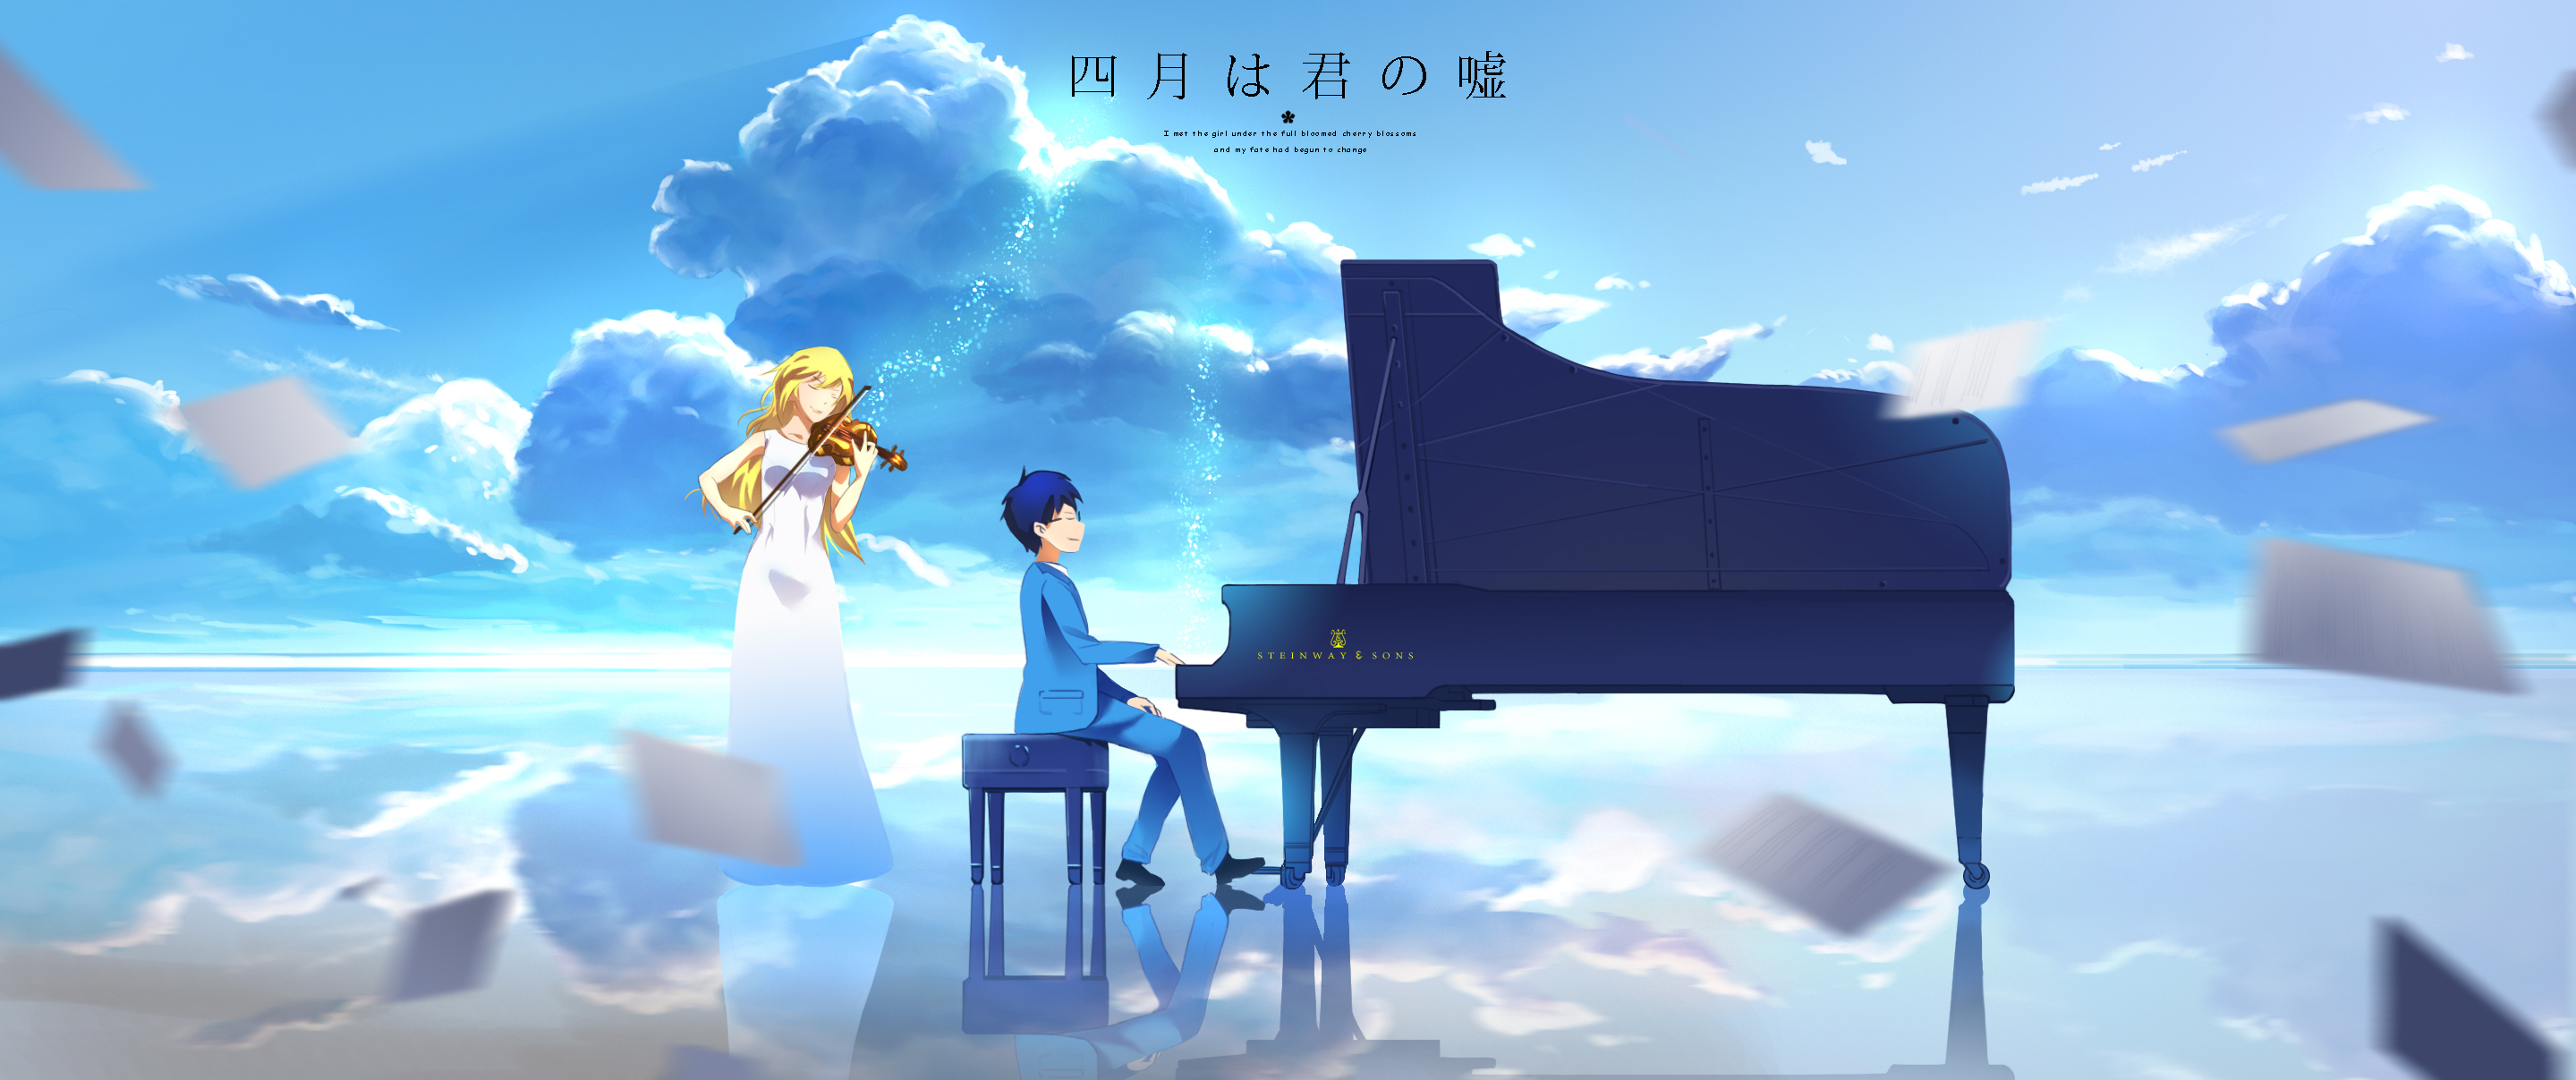 Descarga gratuita de fondo de pantalla para móvil de Animado, Kousei Arima, Kaori Miyazono, Shigatsu Wa Kimi No Uso.